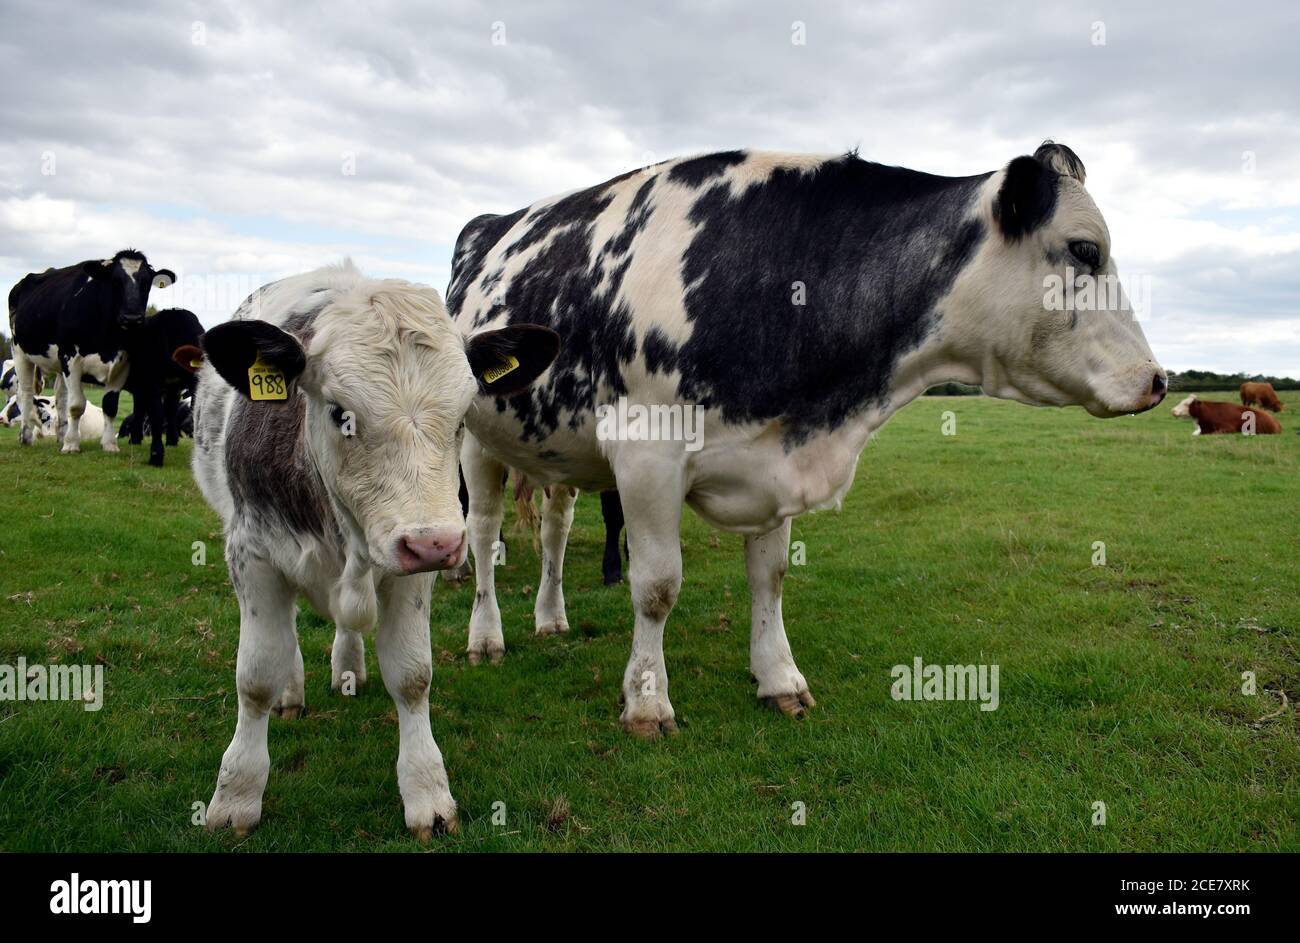 Kühe - Mutter und Ohr gekennzeichneten Kalb stehen zusammen auf einer Viehzucht Weide Land in der Nähe ihrer Herde in Buckinghamshire UK, Ende August. Stockfoto